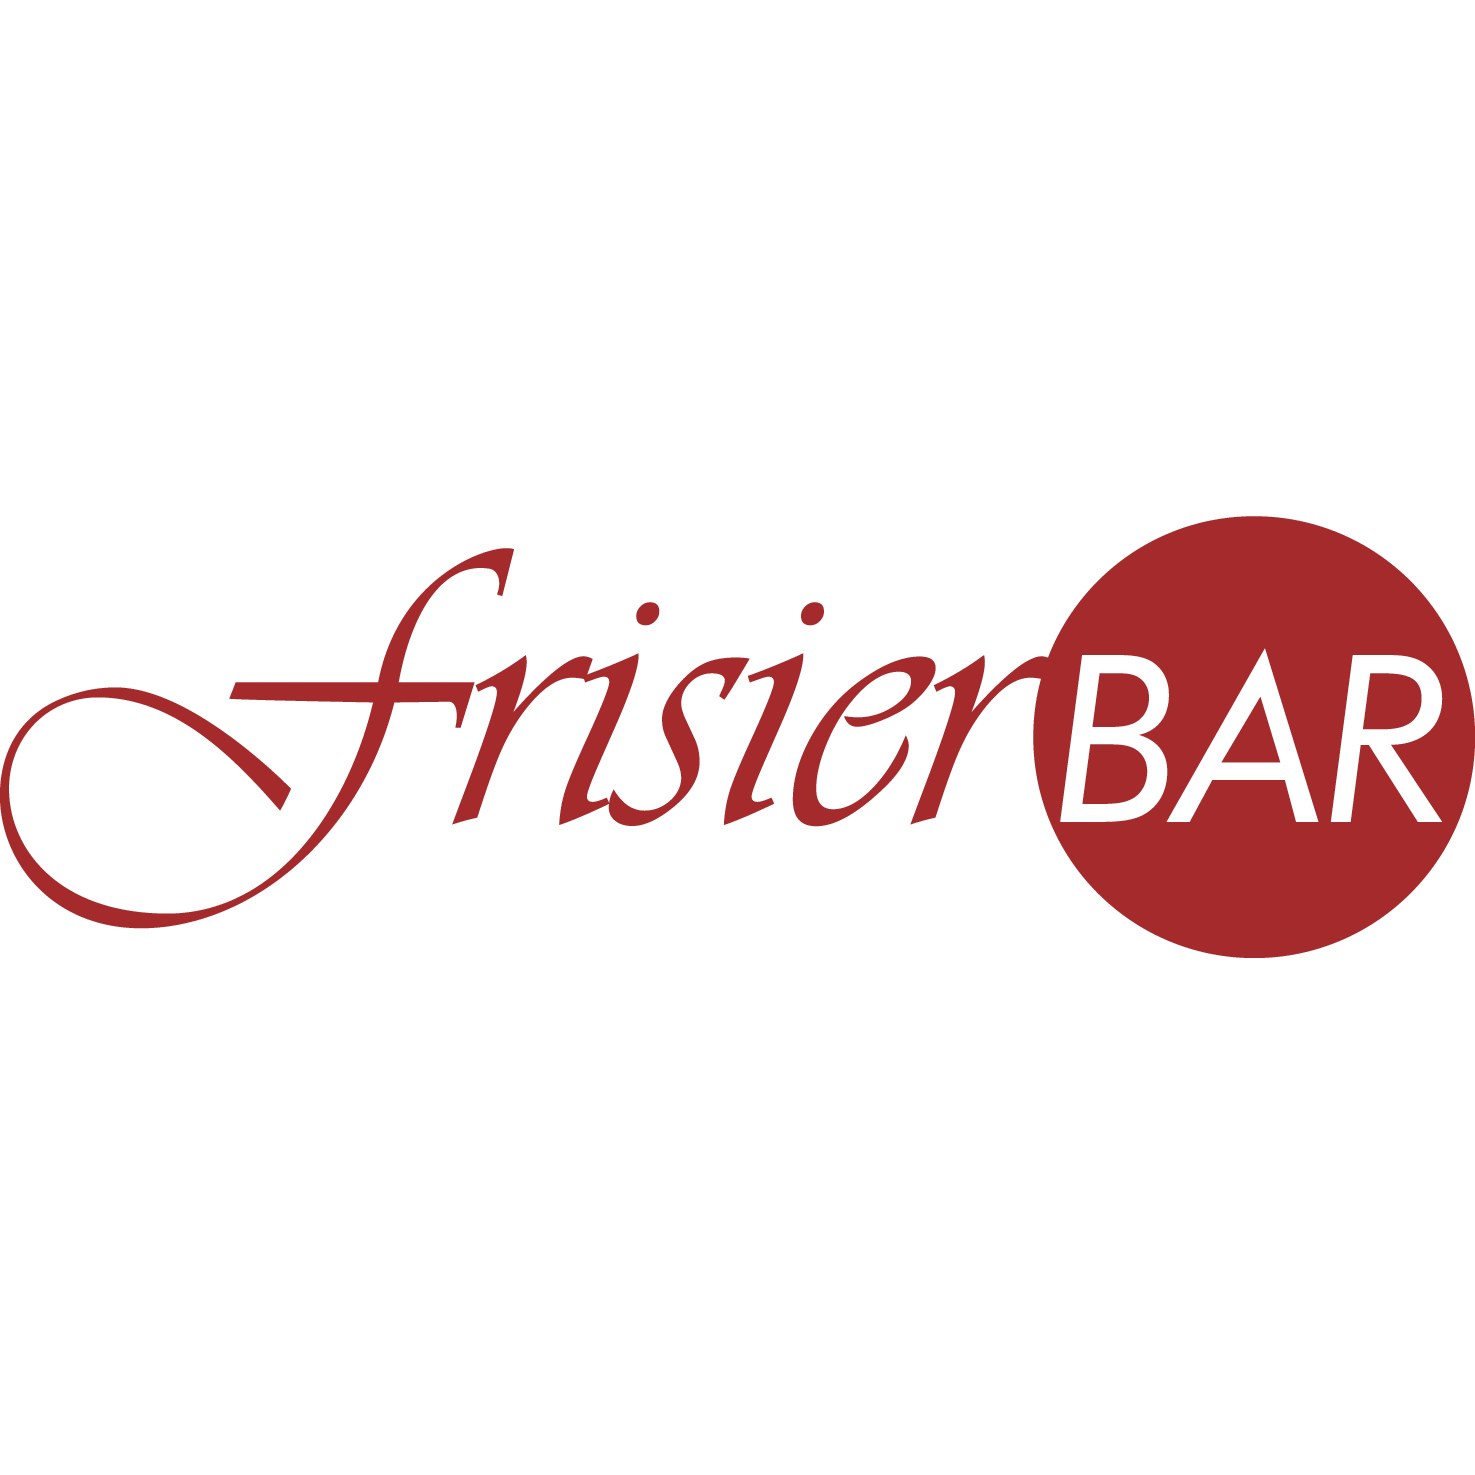 Friseur Netzsch in Selb - Logo